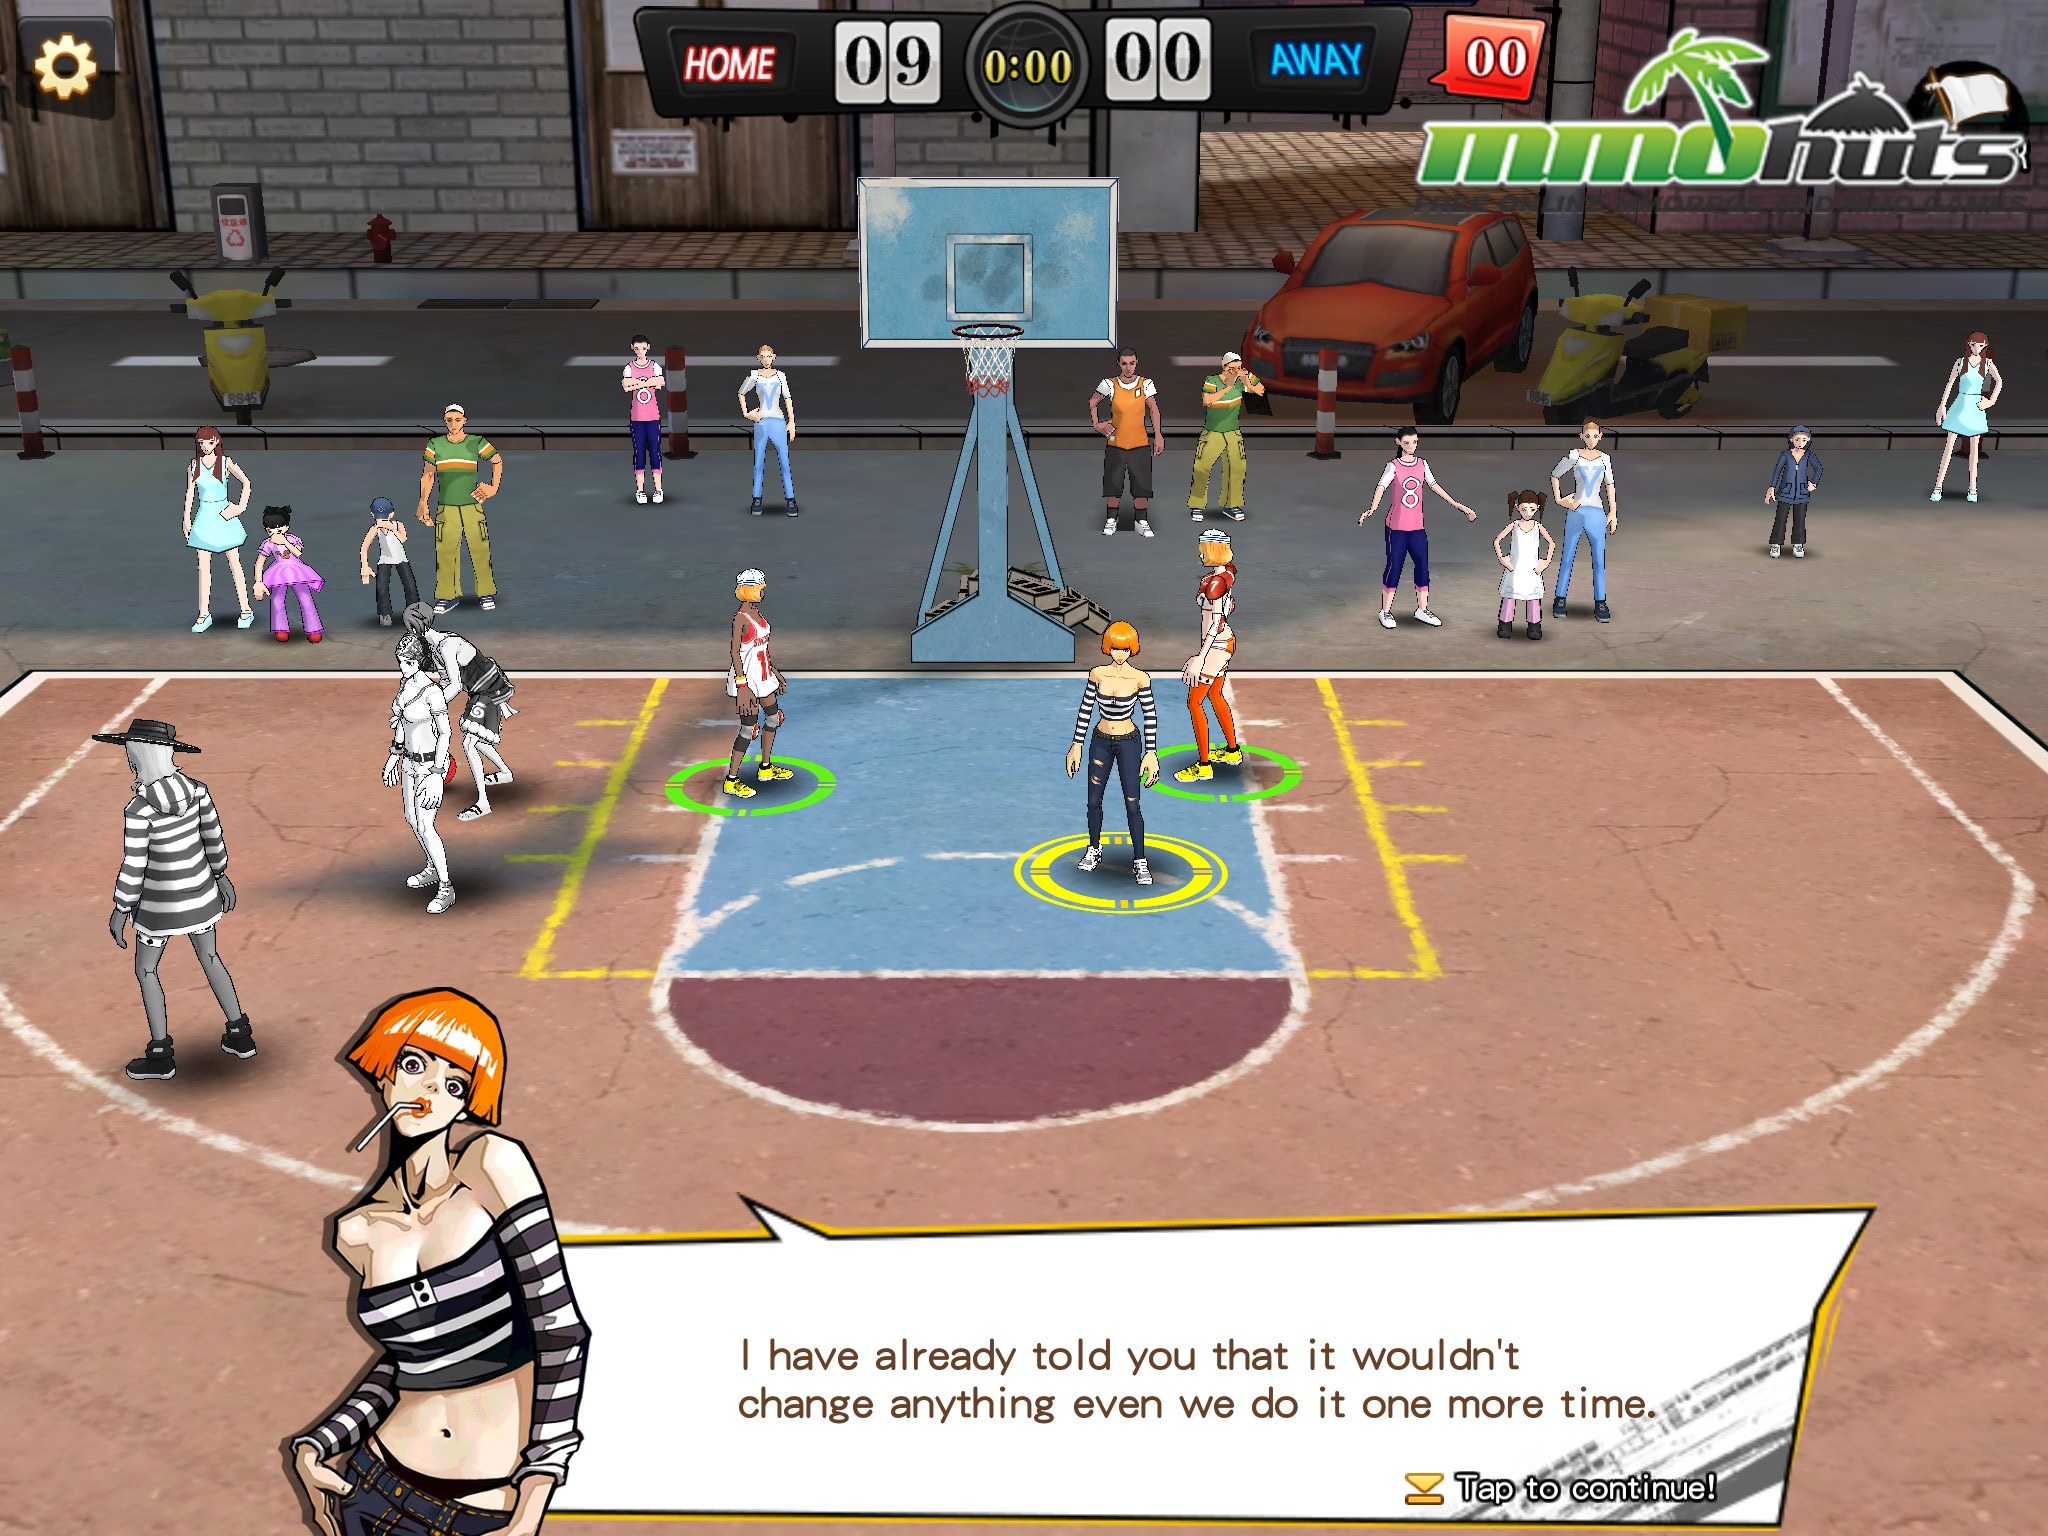 É fã de basquete? Então conheça o jogo Dunk Nation 3X3 para Android e iOS 